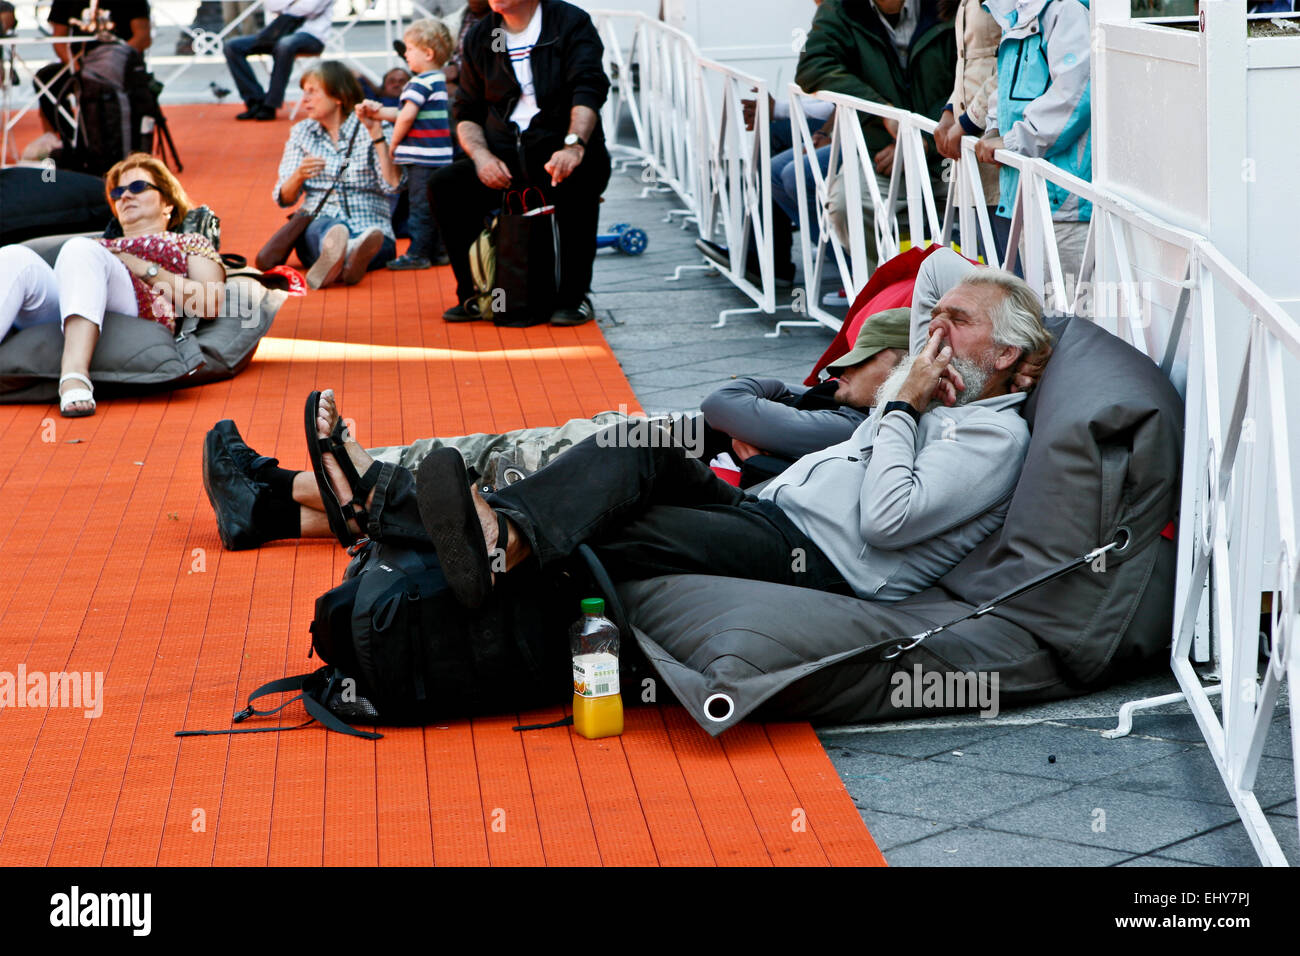 Homme âgé fatigué avec des cheveux blancs et une barbe, allongé sur le trottoir, relaxant et prenant son doigt vers le haut de son nez. Mauvais comportement. Paris, France, UE. Banque D'Images